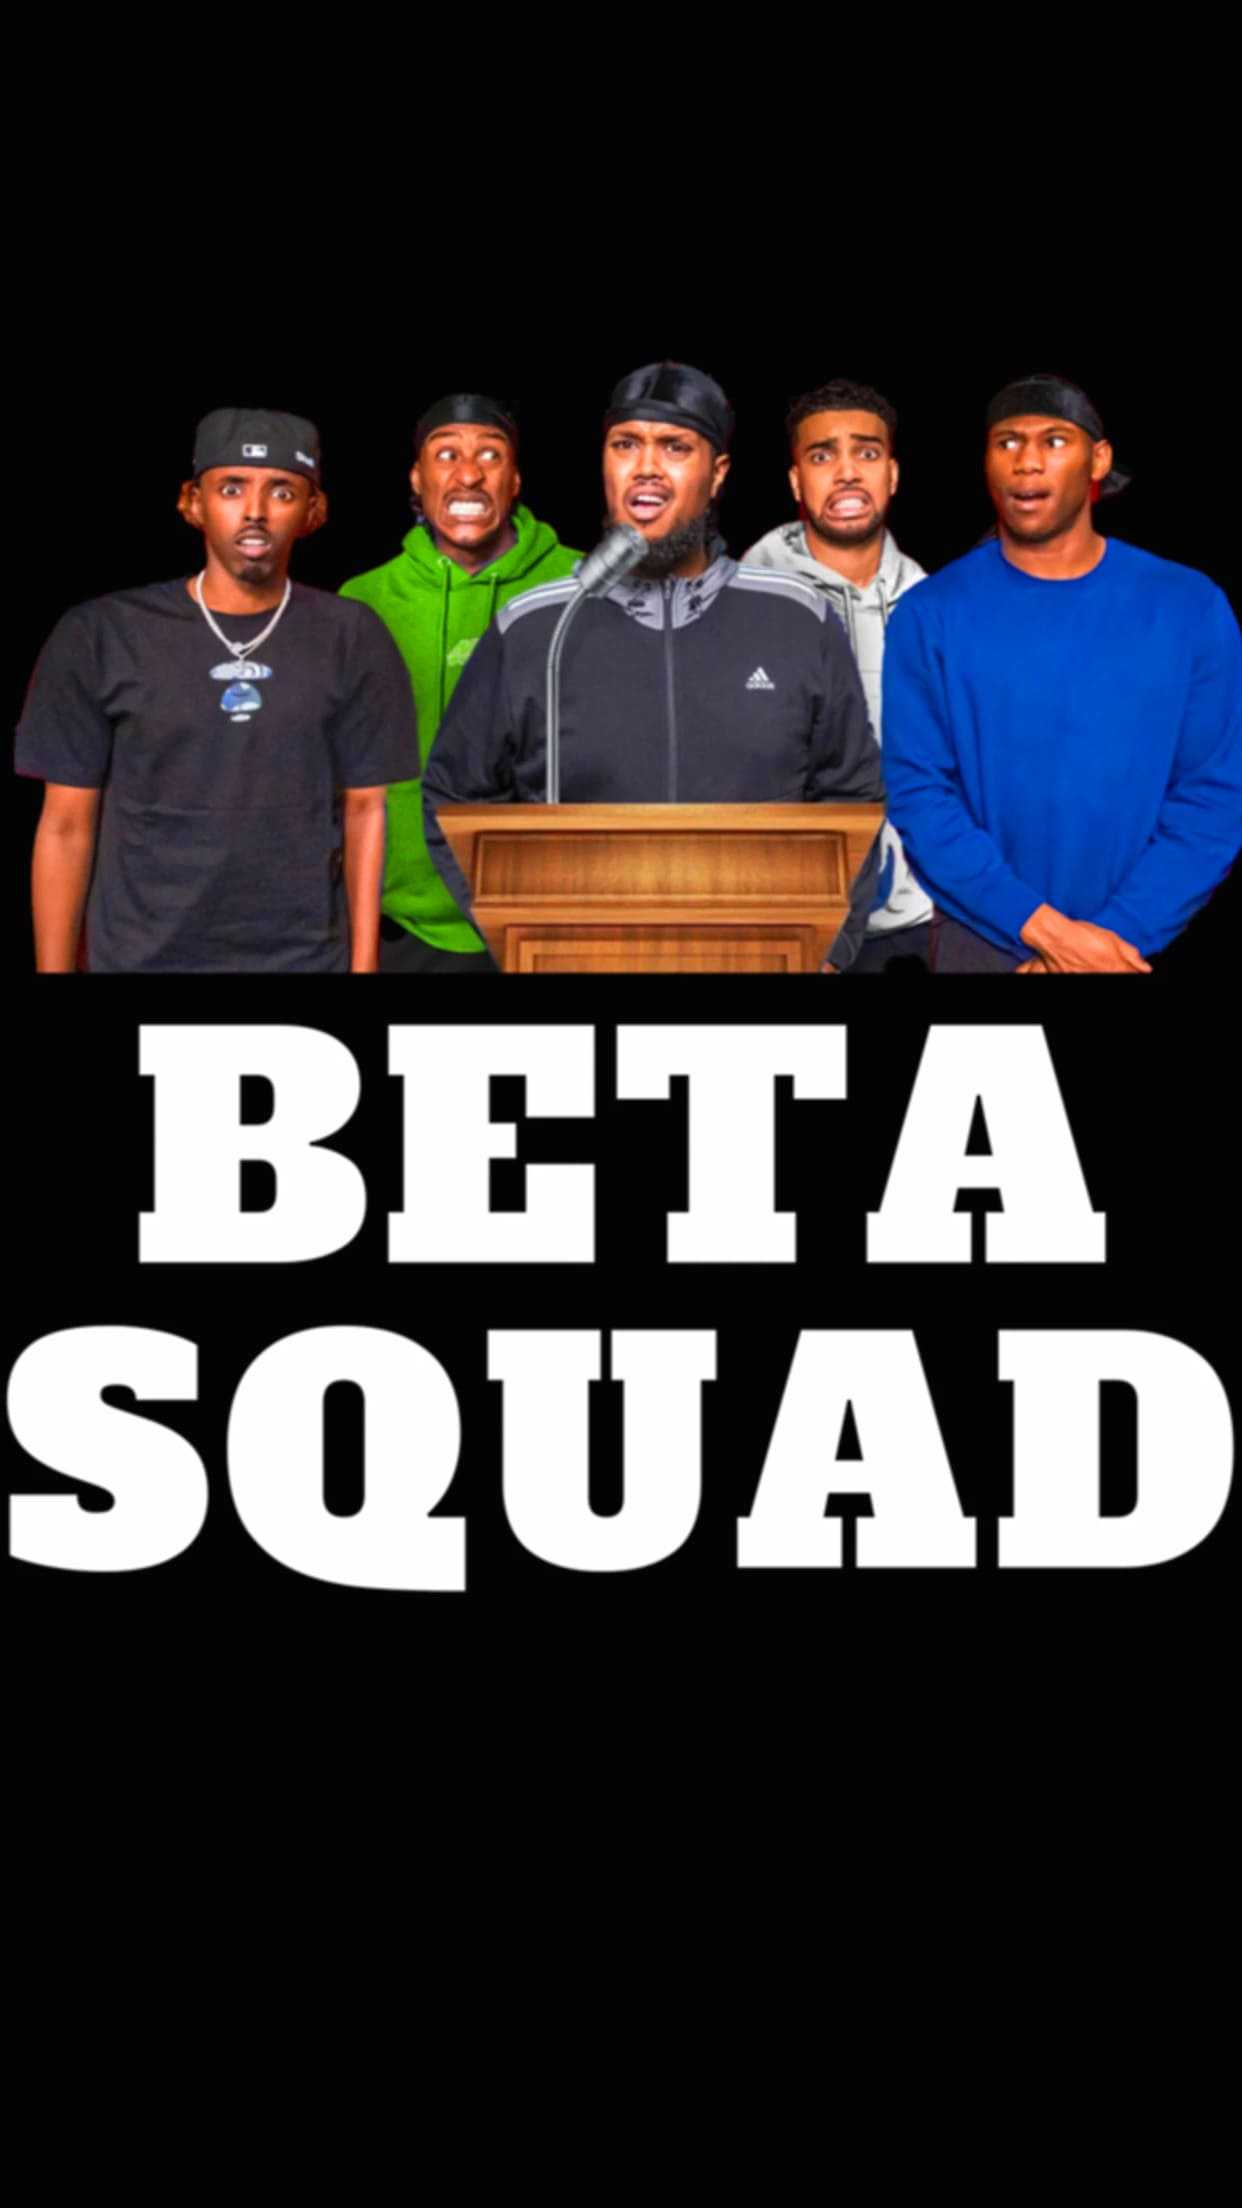 Beta Squad Wallpaper - iXpap